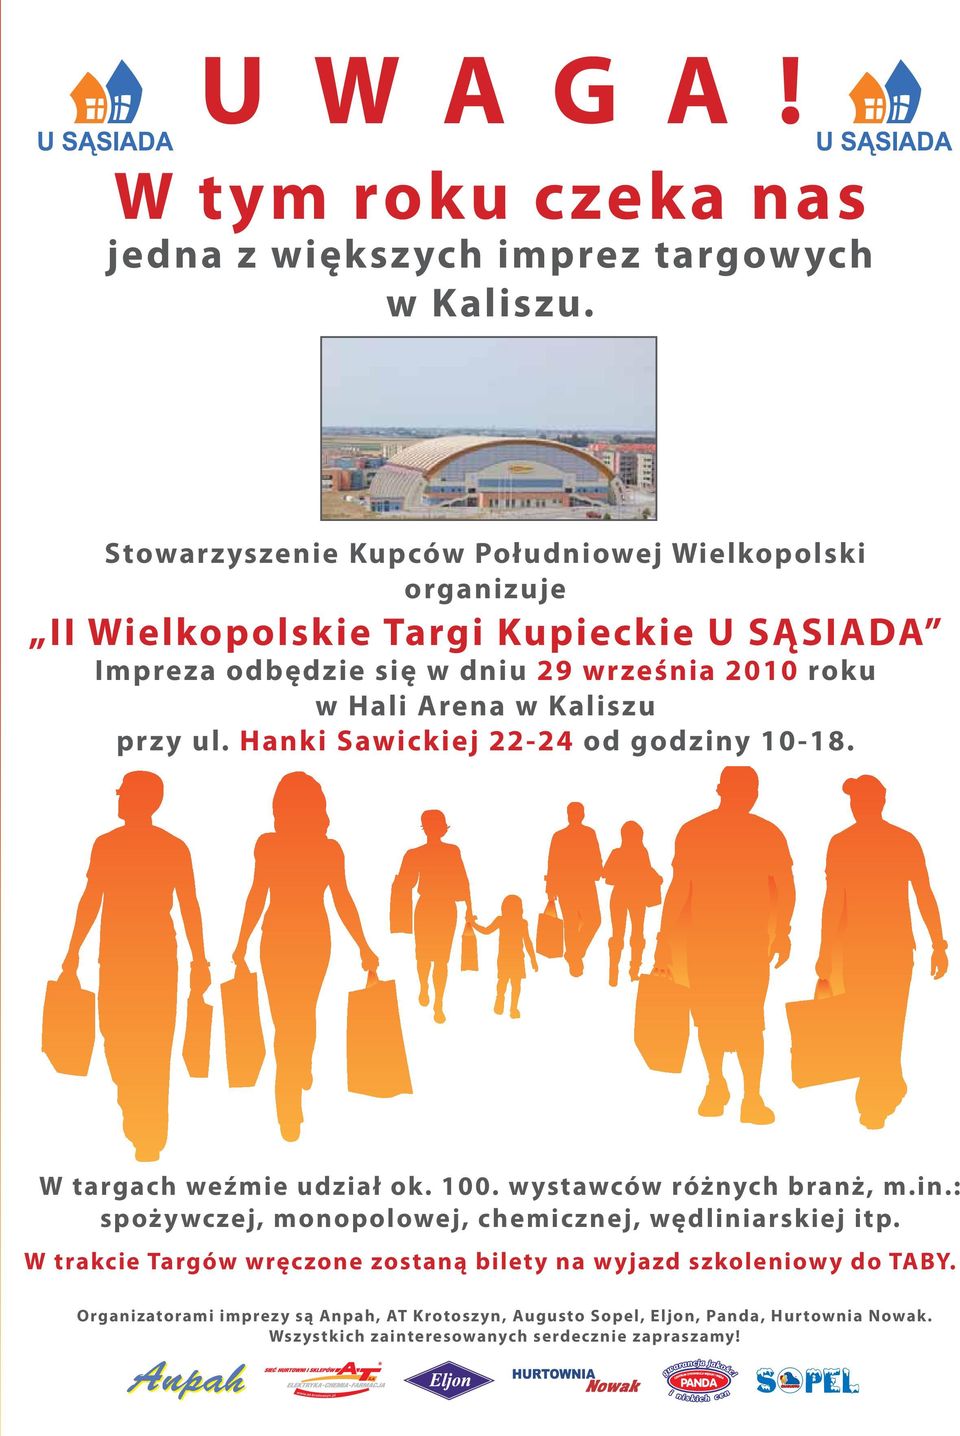 Arena w Kaliszu przy ul. Hanki Sawickiej 22-24 od godziny 10-18. W targach weźmie udział ok. 100. wystawców różnych branż, m.in.: spożywczej, monopolowej, chemicznej, wędliniarskiej itp.